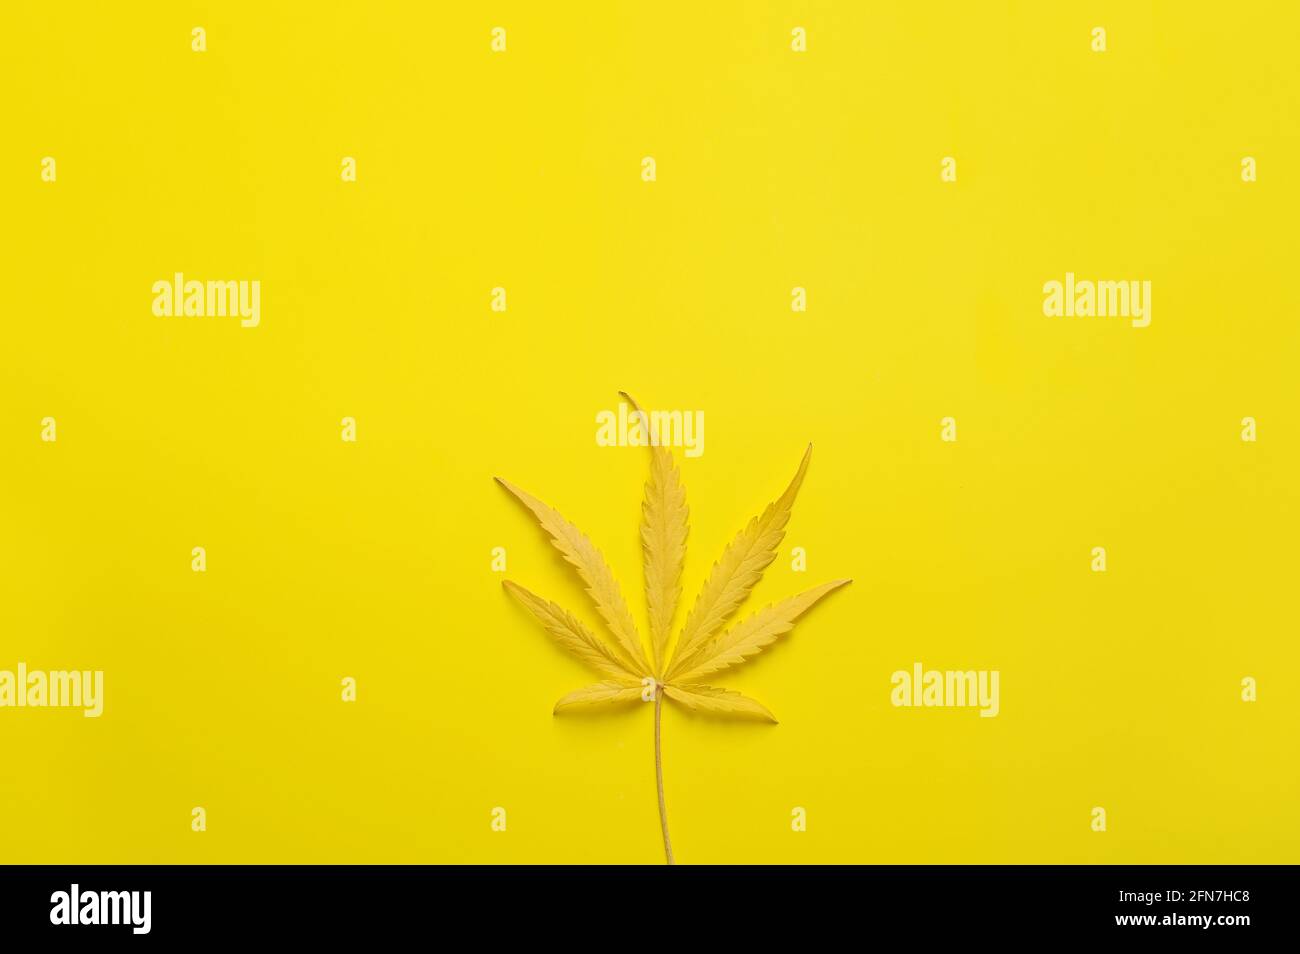 Cannabisblatt mit Zitronengeschmack. Frische Marihuanapflanze auf gelbem Hintergrund. Hanf Erholung, medizinische Nutzung, Legalisierung. Stockfoto